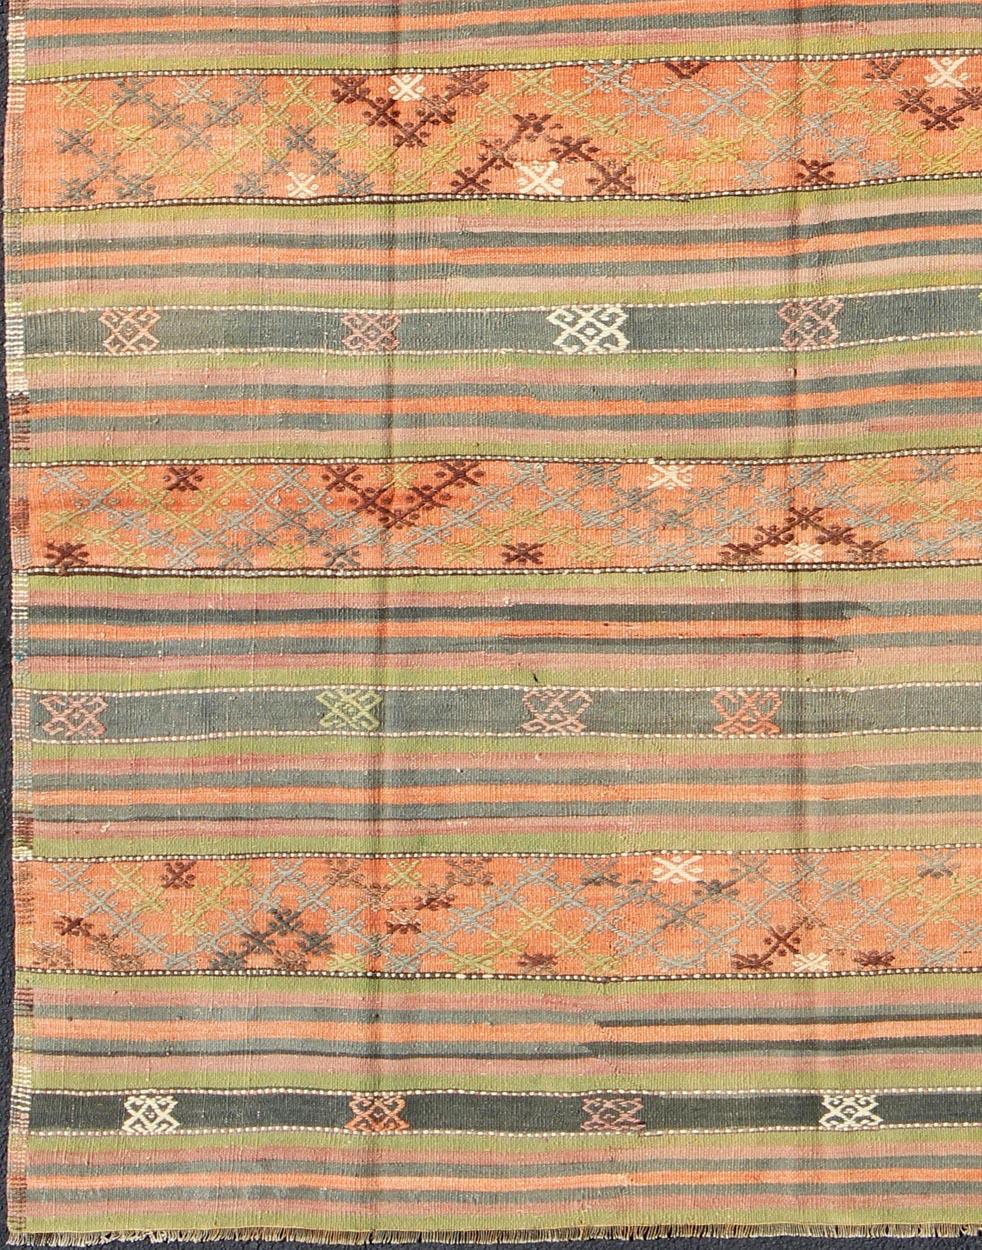 Vintage Turkish Kilim rug with geometric shapes and colorful stripes, rug ned-28, country of origin / type : turkey / Kilim, circa mid-20th century

Présentant des formes géométriques dans un motif de rayures horizontales répétées, ce kilim unique